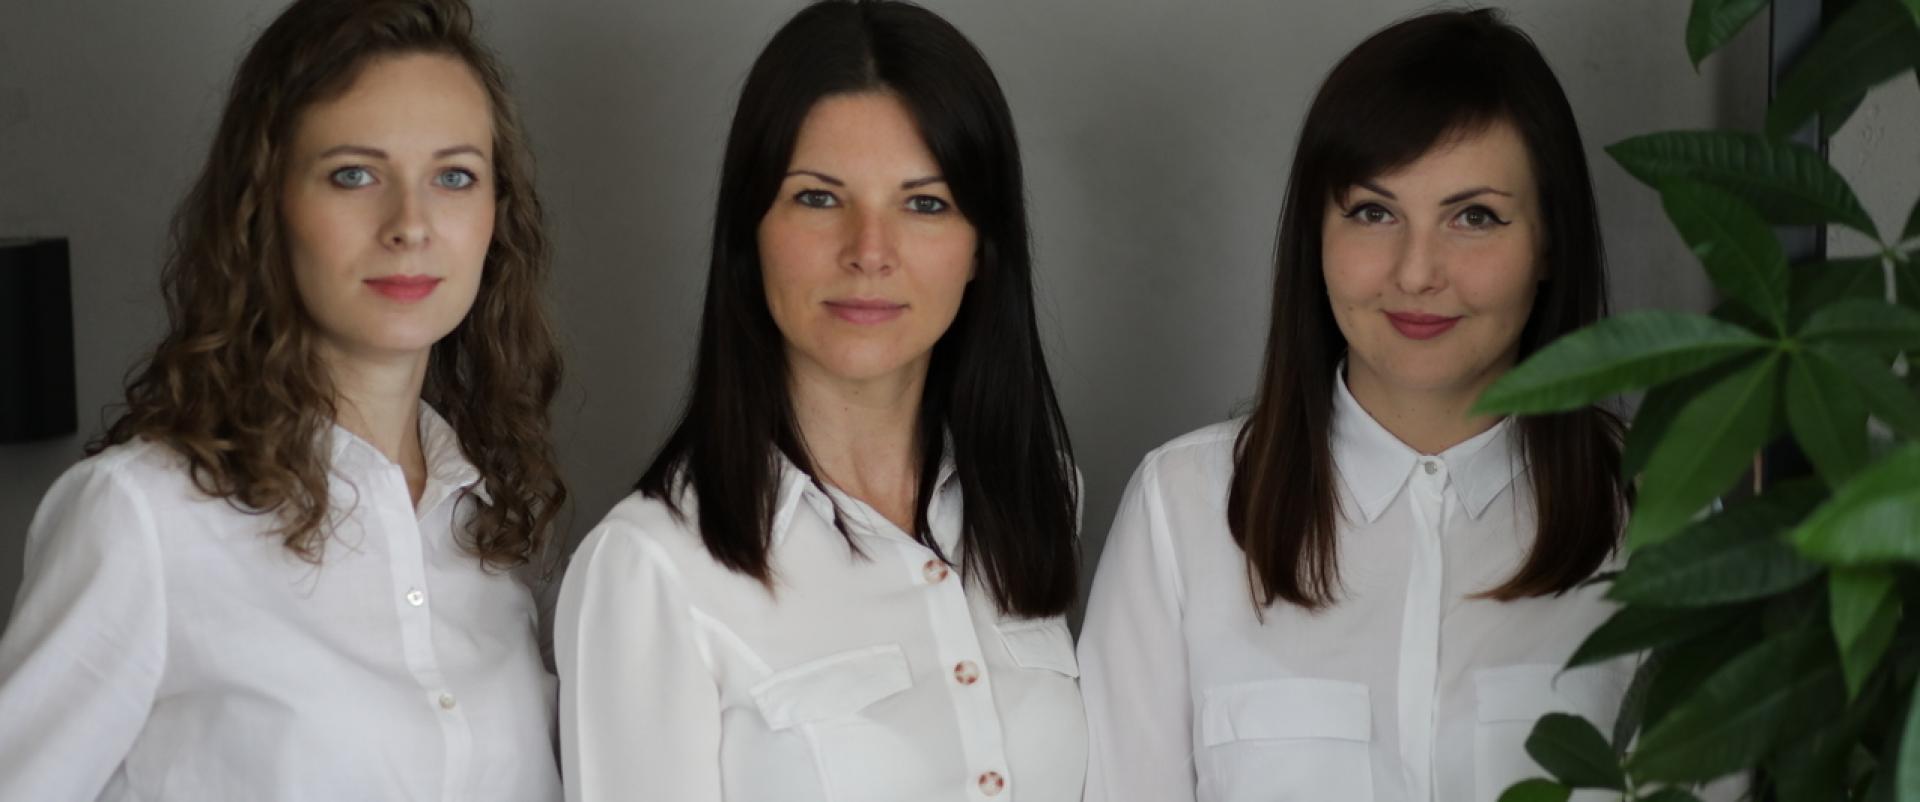 Trzy mikrobiolożki z Krakowa uwierzyły w prebiotyki i stworzyły nową markę kosmetyczną